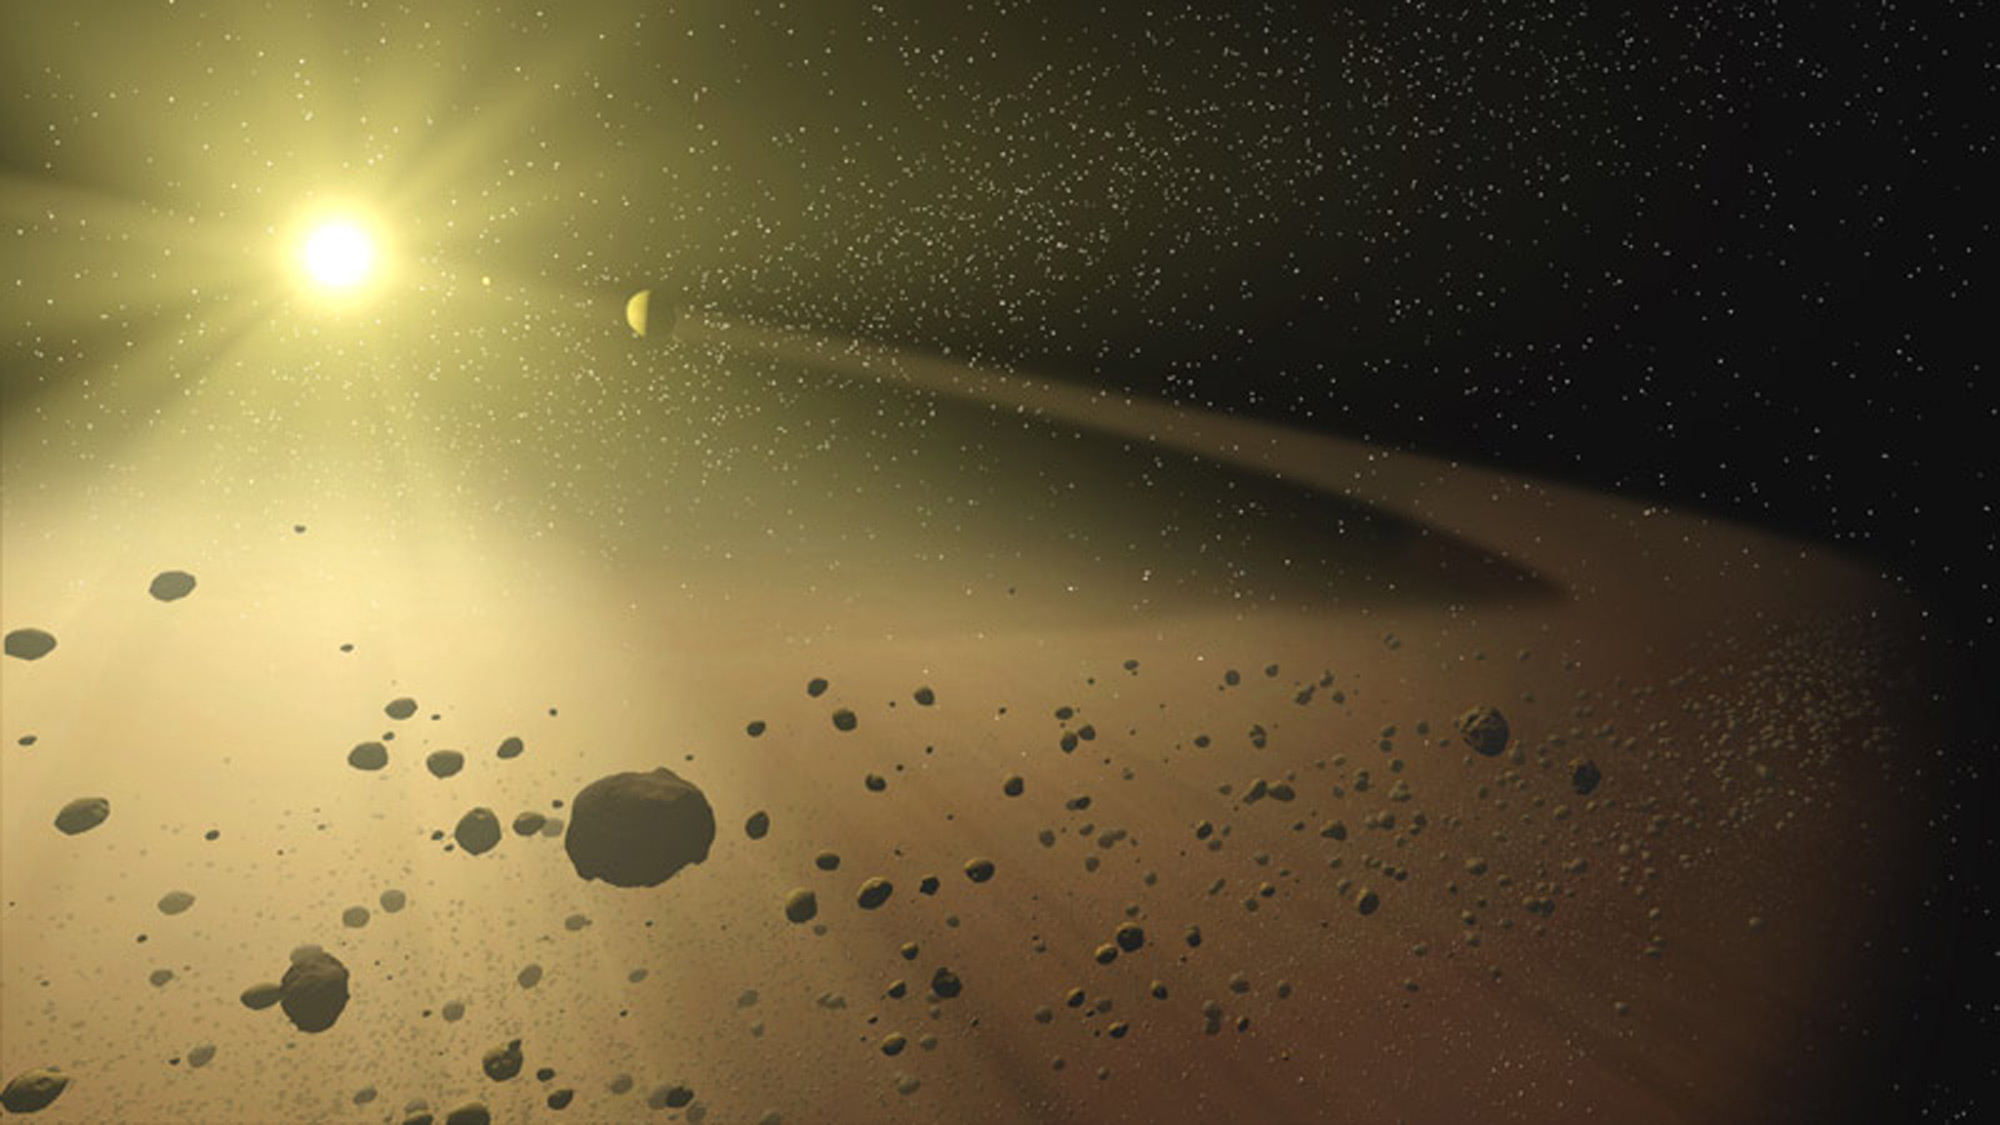 НАСА: вместо экспедиции на Венеру мы направим два зонда в пояс астероидов